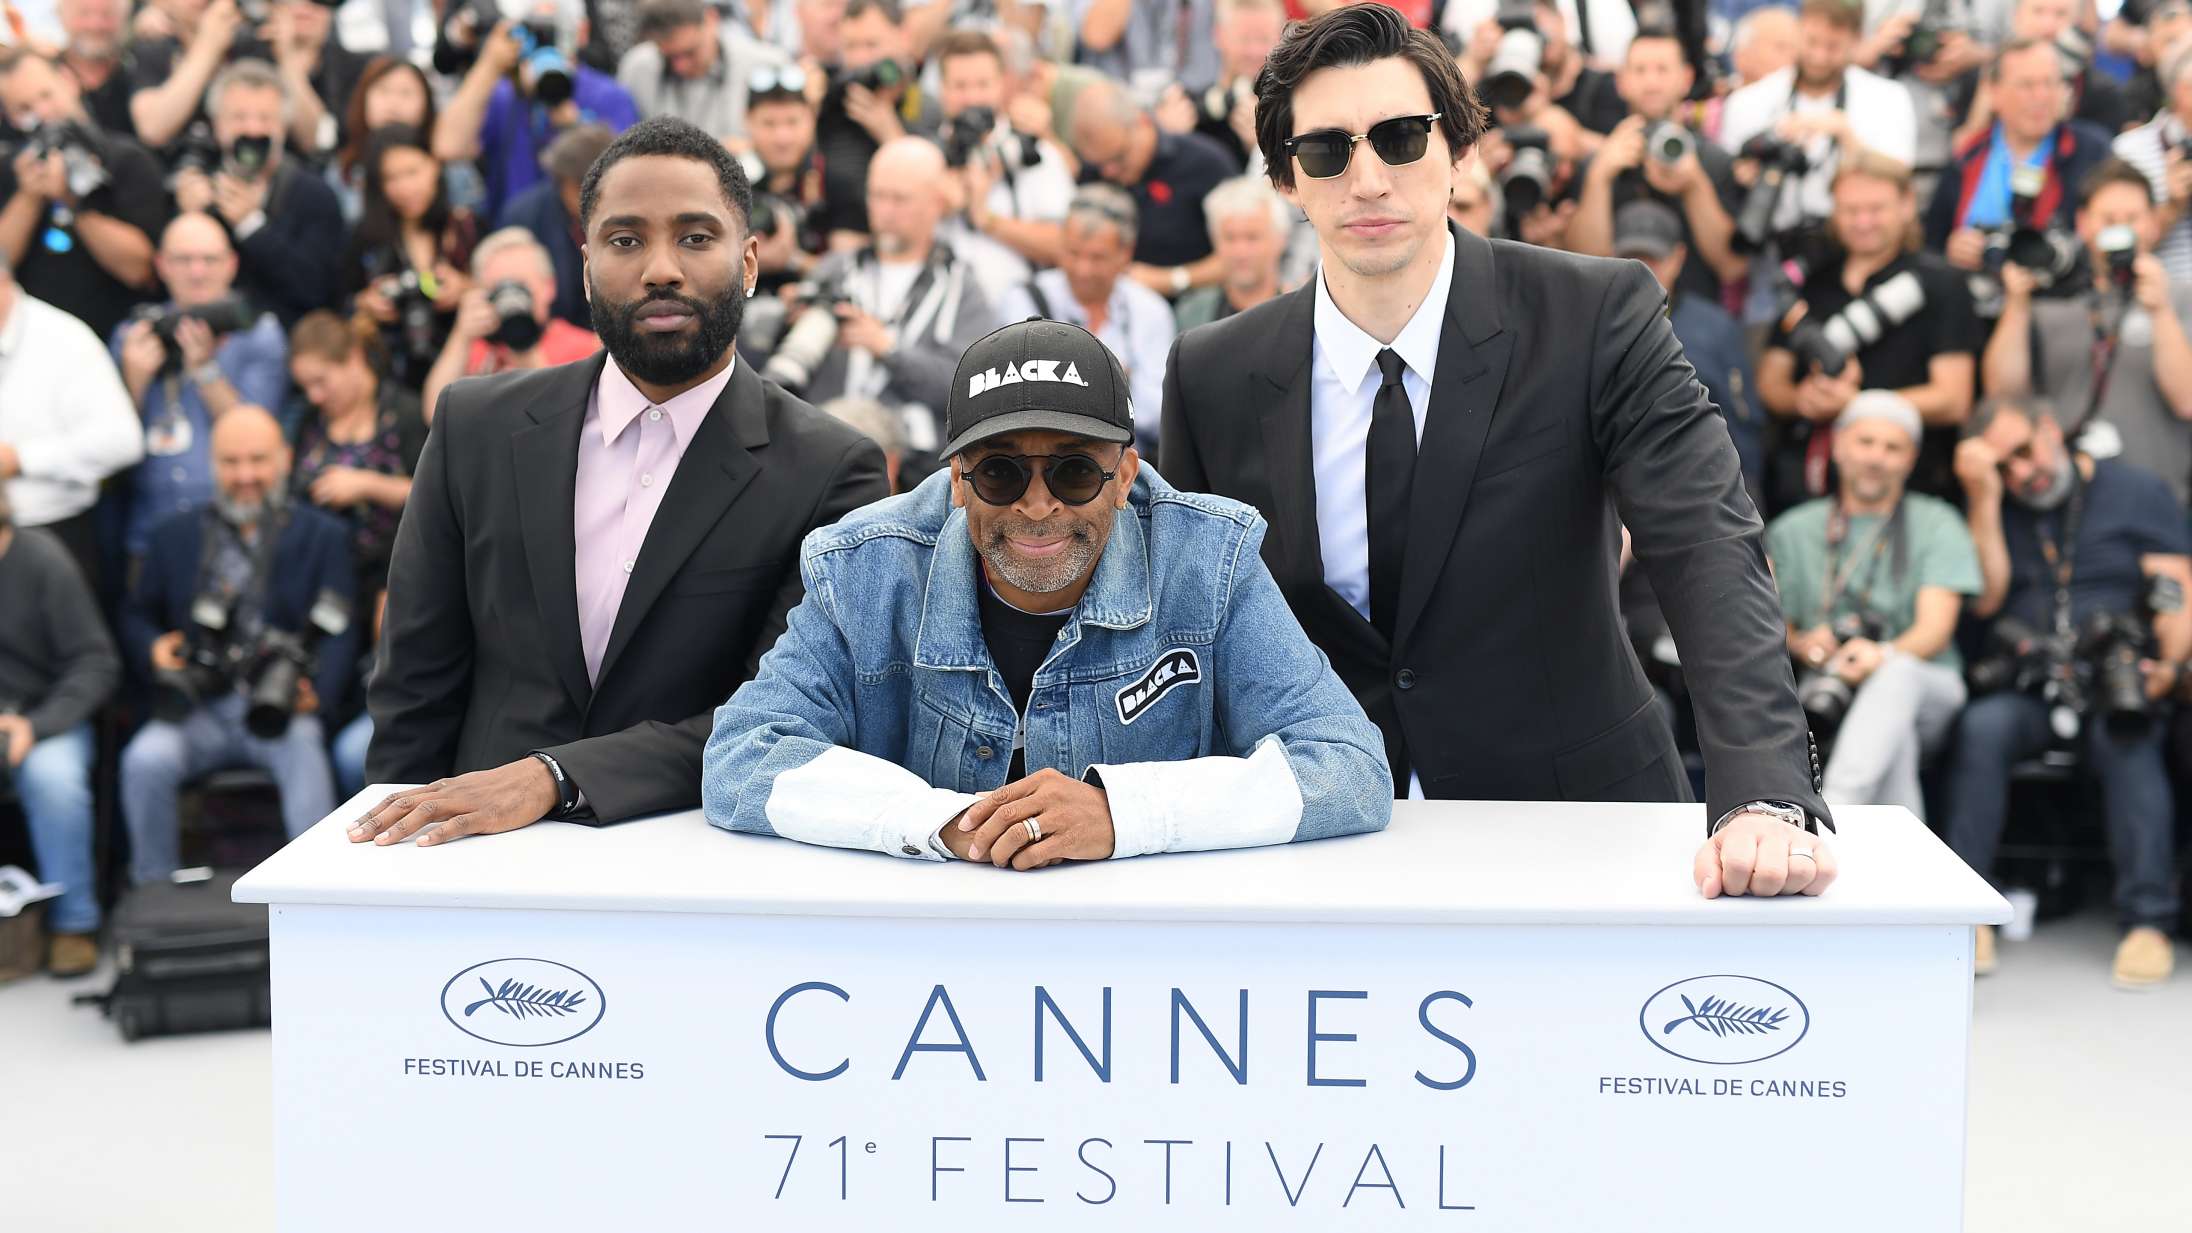 Cannes-festivalens position er mere truet end længe – men også mere tydelig